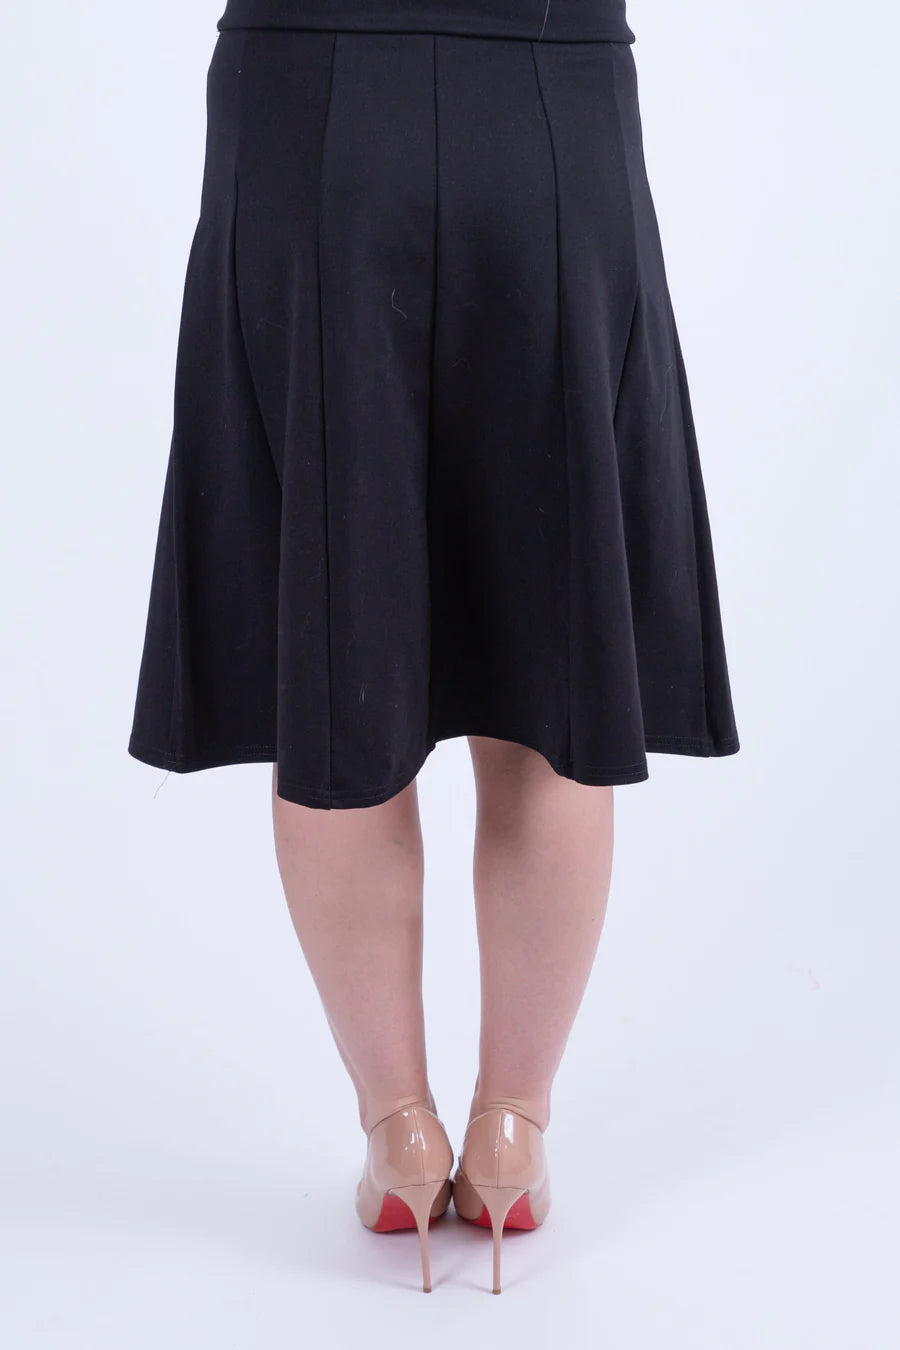 KMW Panel Skirt Black 29" 4829